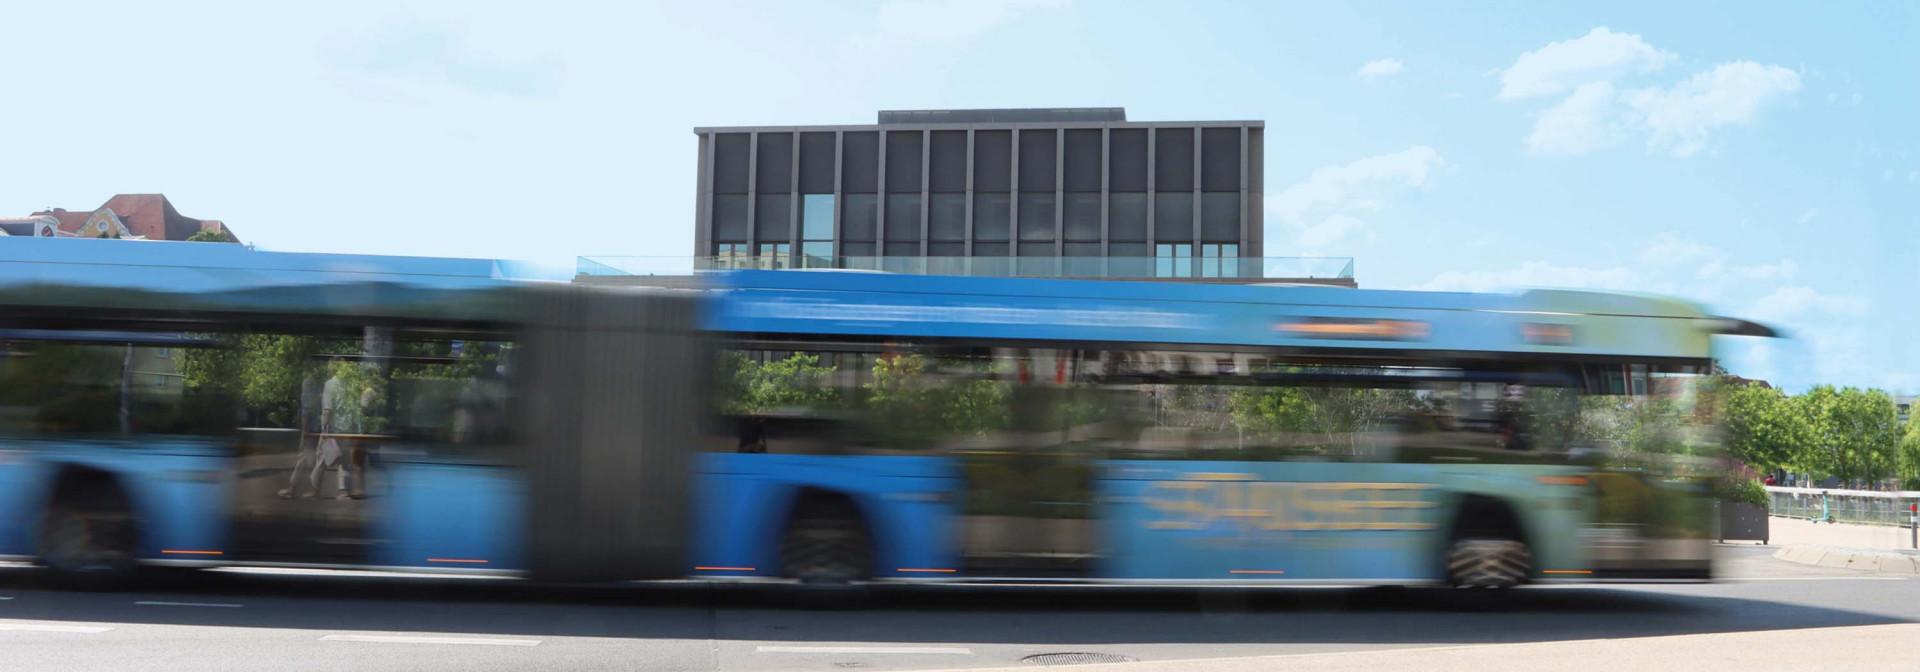 Ein Bus der RSV fährt in Reutlingen an der Stadthalle vorbei. Der Bus ist etwas unscharf zu sehen.